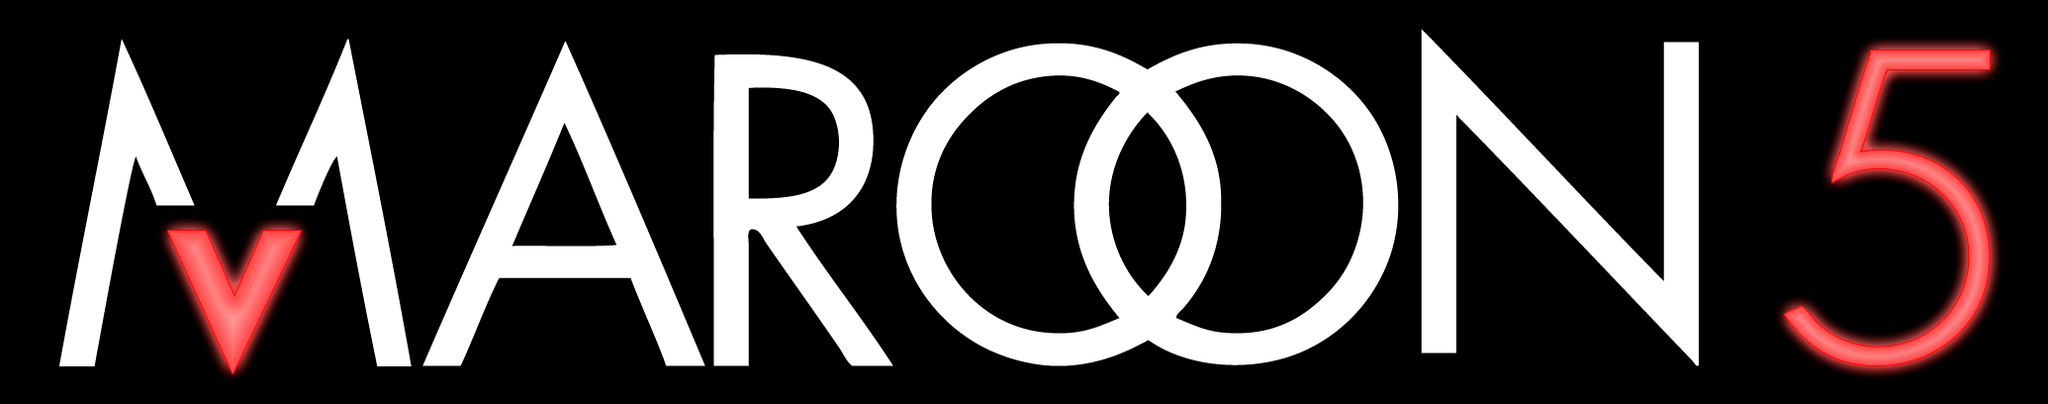 New Maroon 5 Logo - Maroon 5 logo png 2 » PNG Image